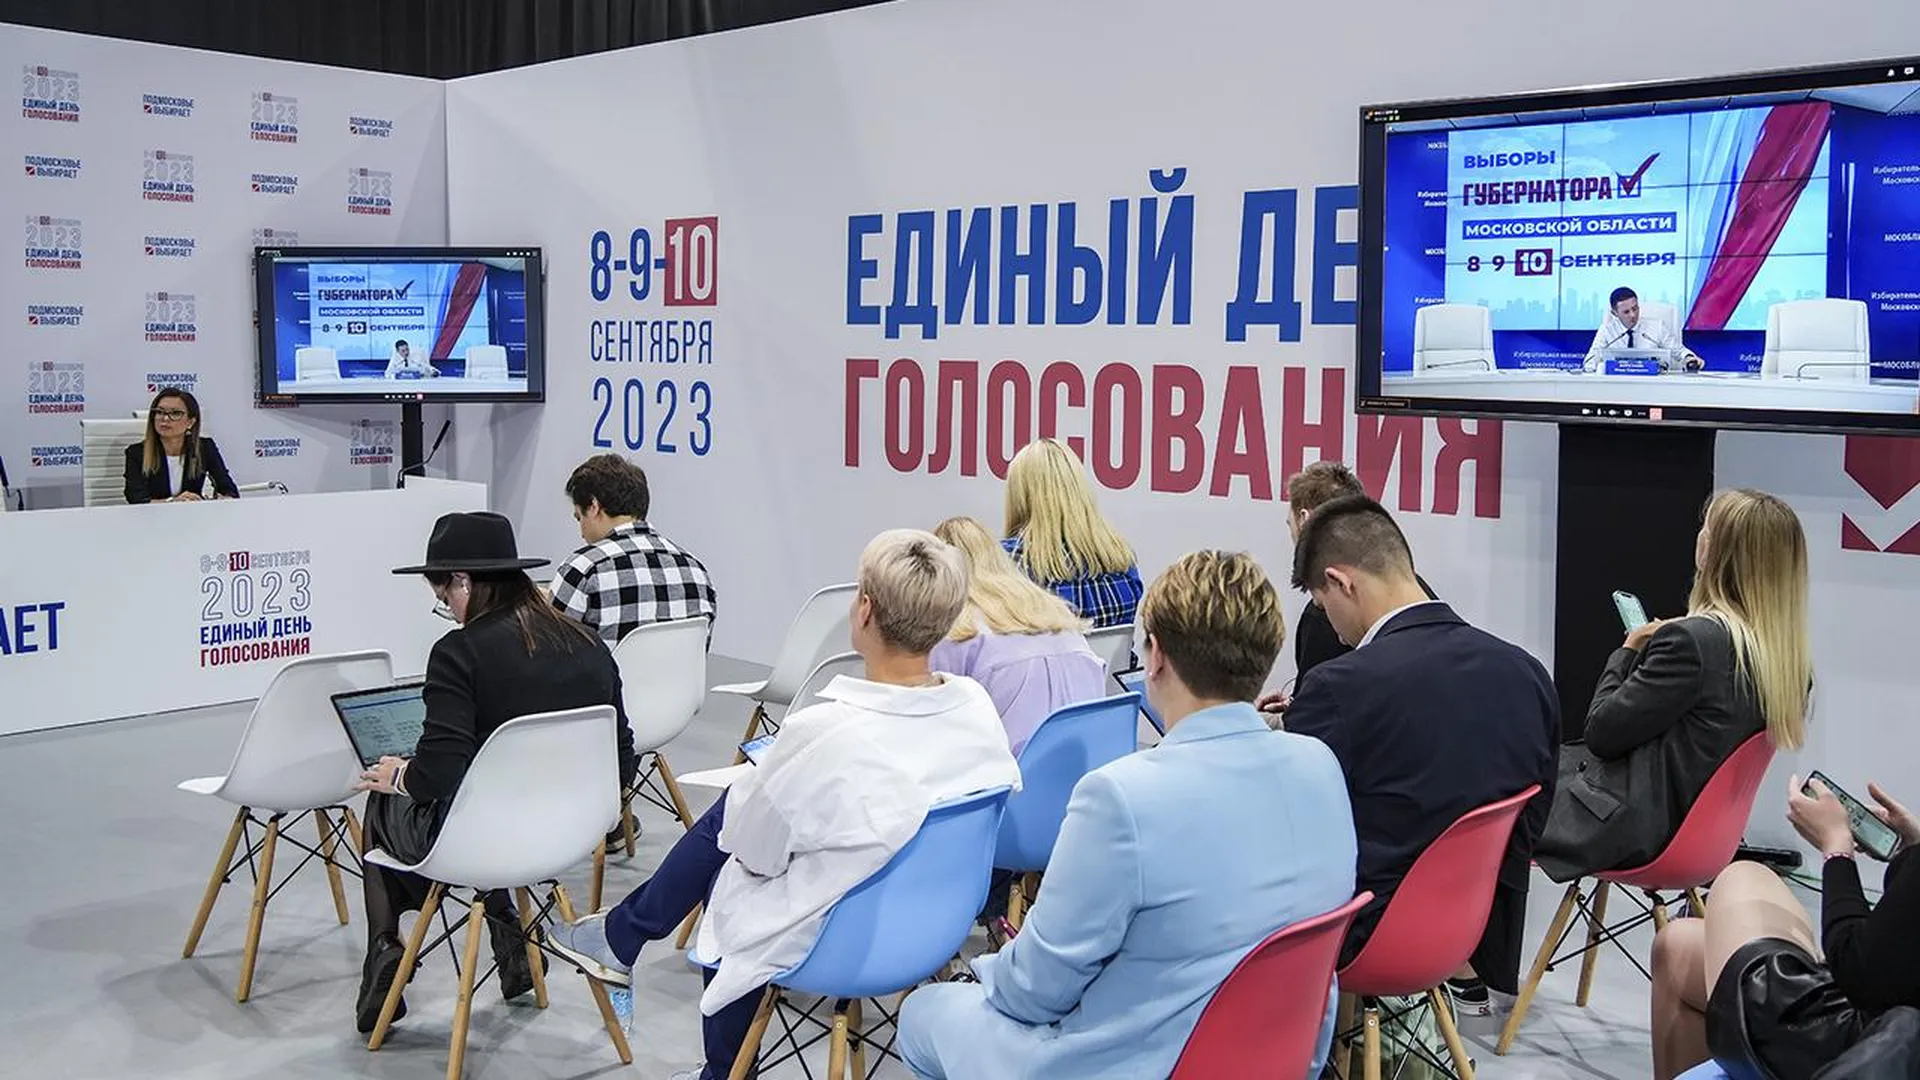 Олег Сирота: итоги выборов связаны с успехами Подмосковья в последние годы